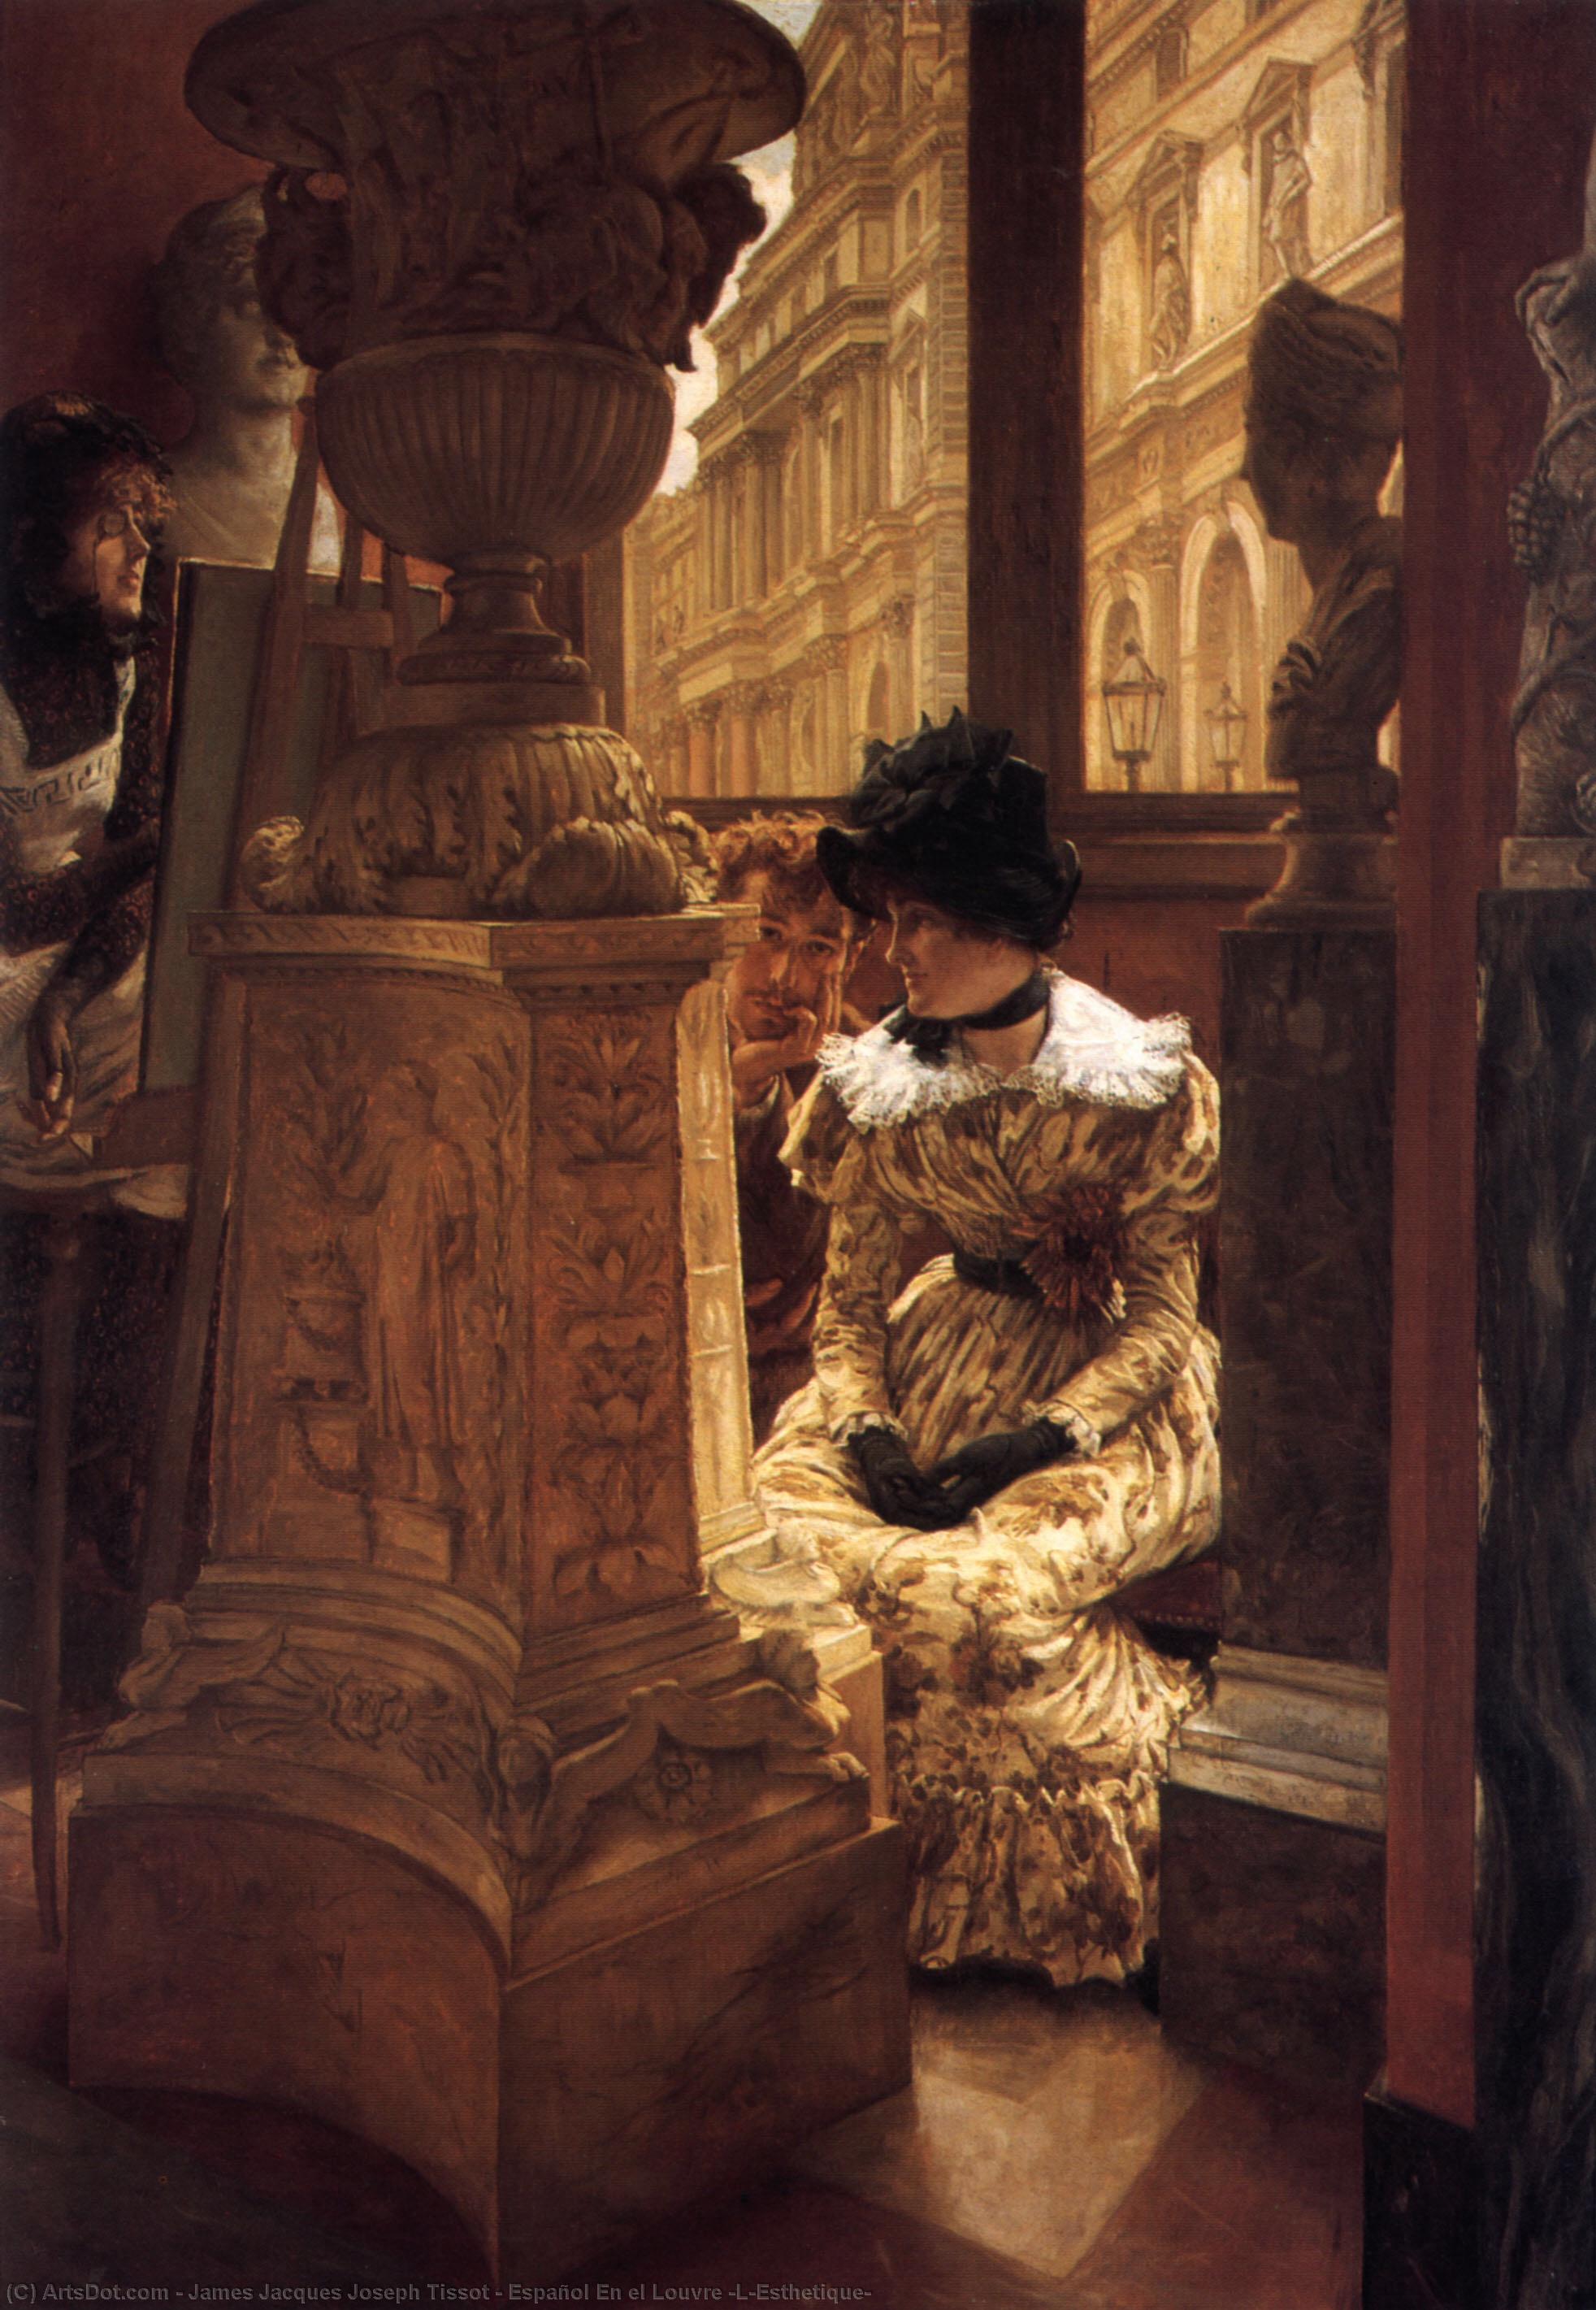 Wikioo.org - The Encyclopedia of Fine Arts - Painting, Artwork by James Jacques Joseph Tissot - Español En el Louvre (L’Esthetique)